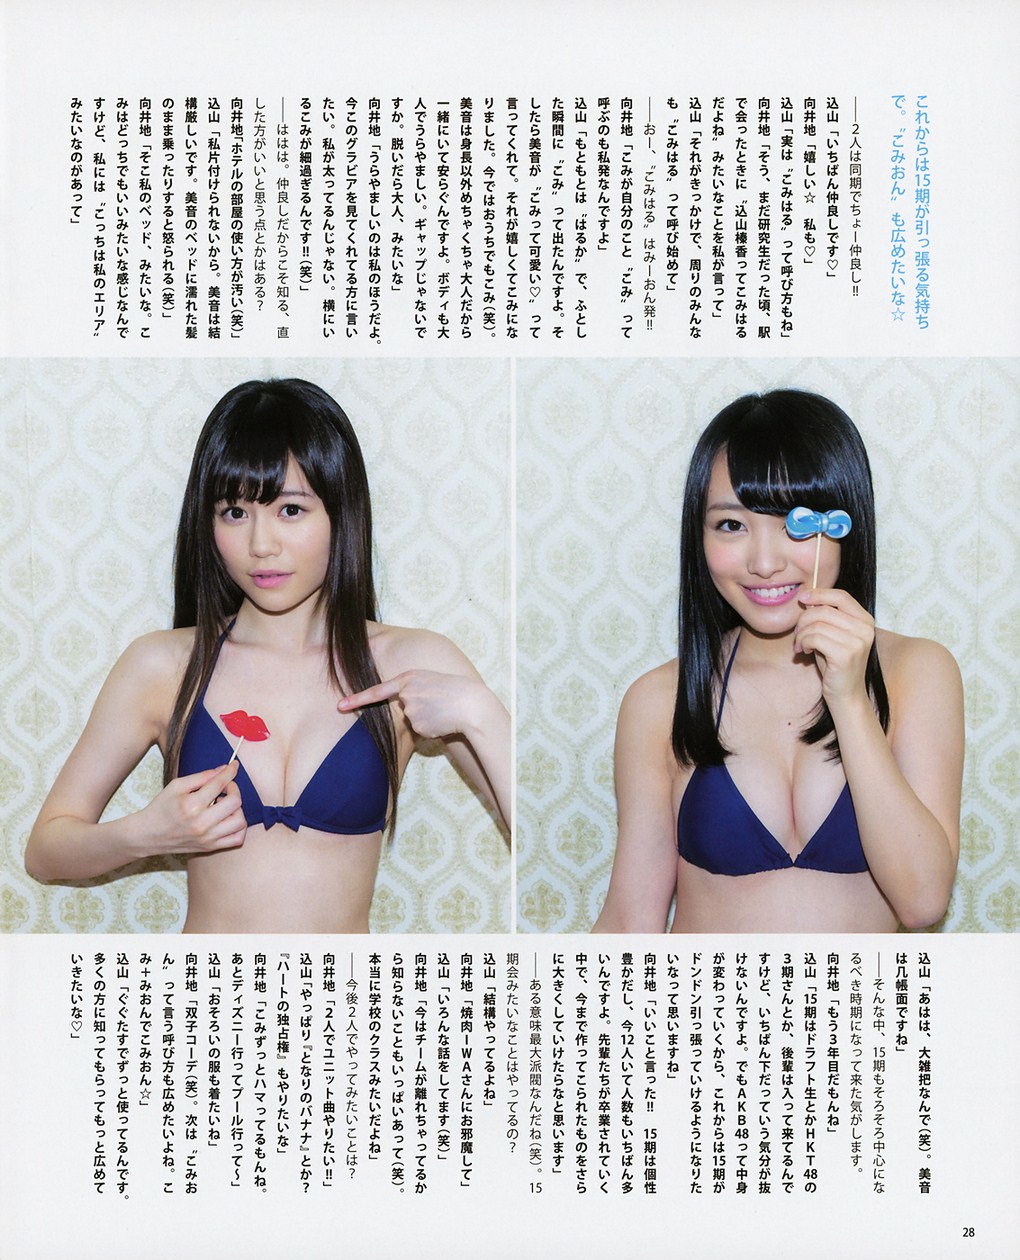 Mukaichi Mion 向井地美音, Komiyama Haruka 込山榛香 AKB48, BOMB Magazine 2015.07 Gravure